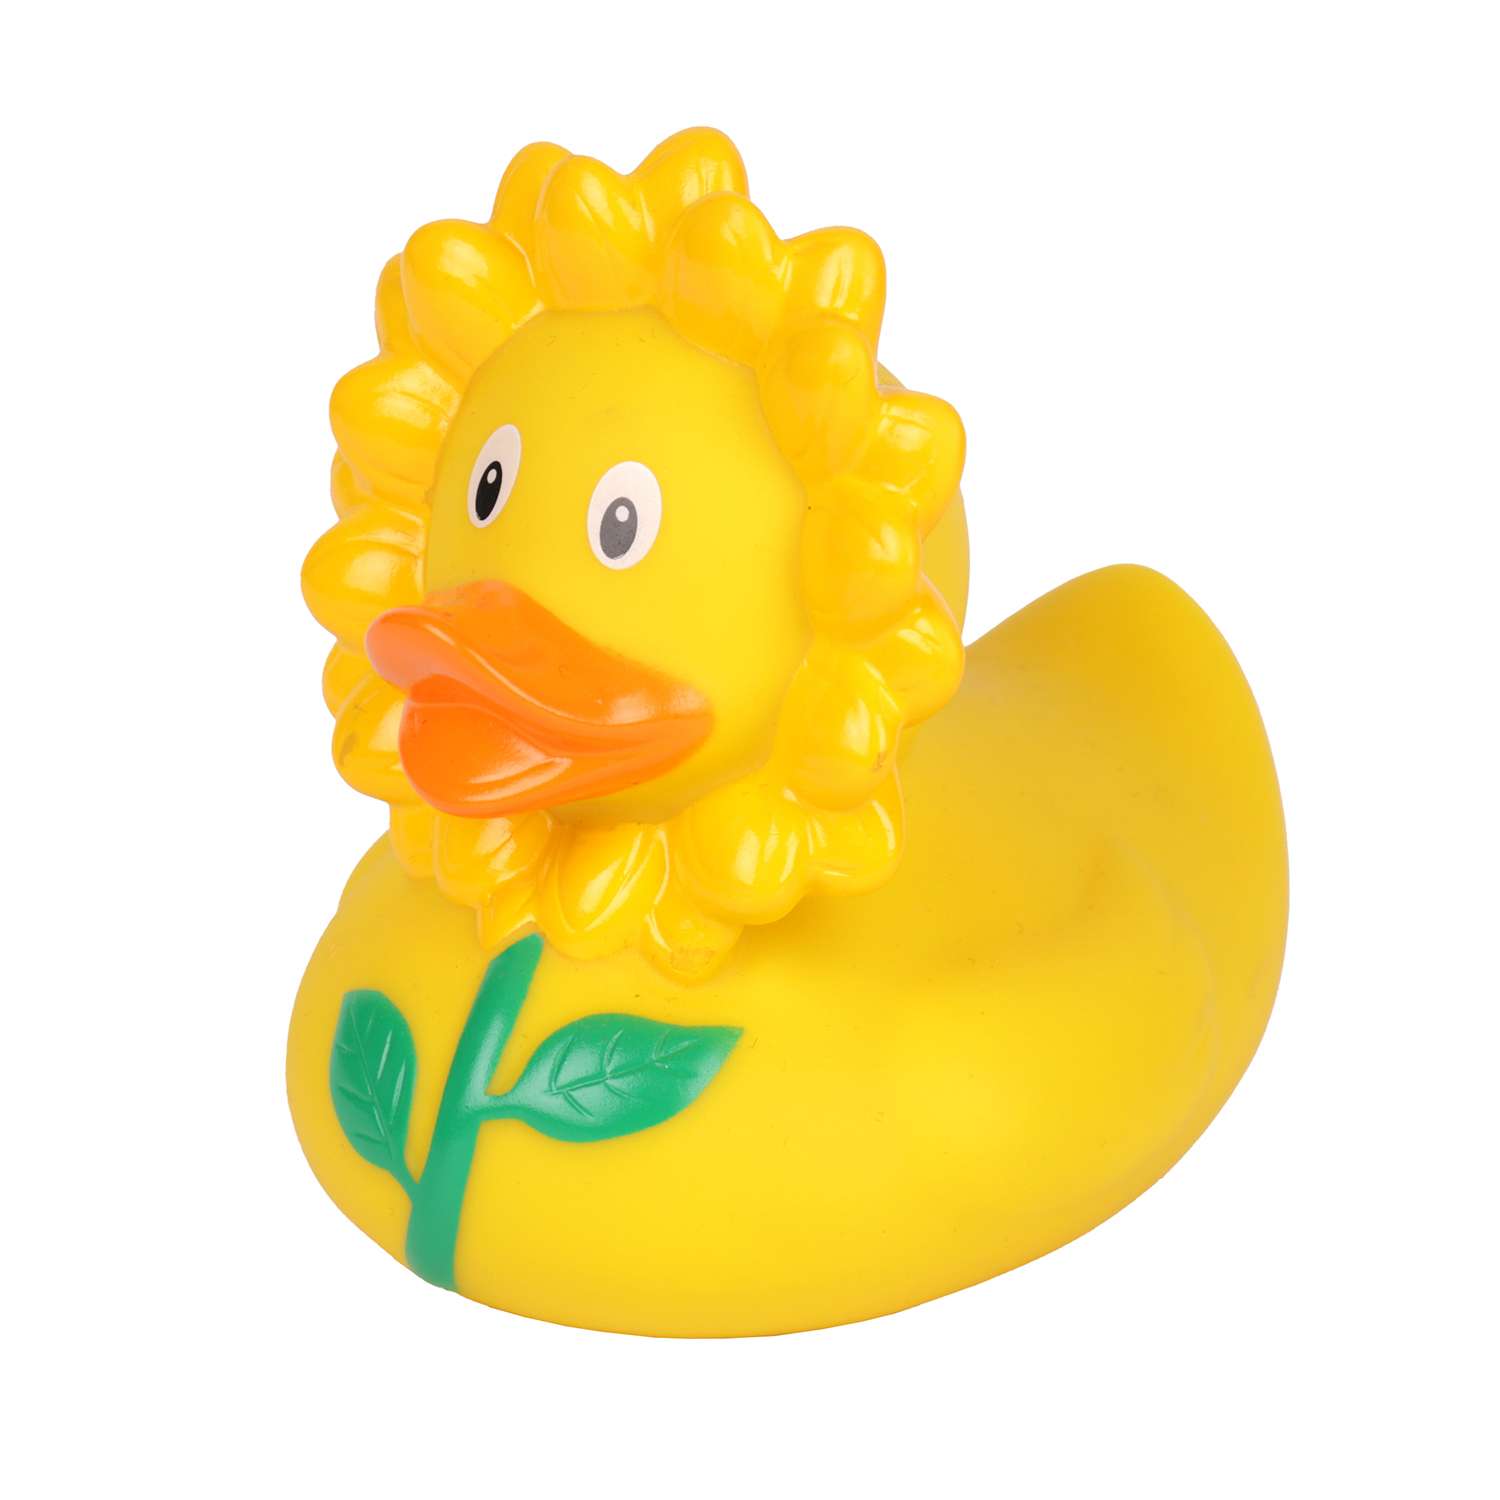 Игрушка для ванны сувенир Funny ducks Подсолнух уточка 1876 - фото 1